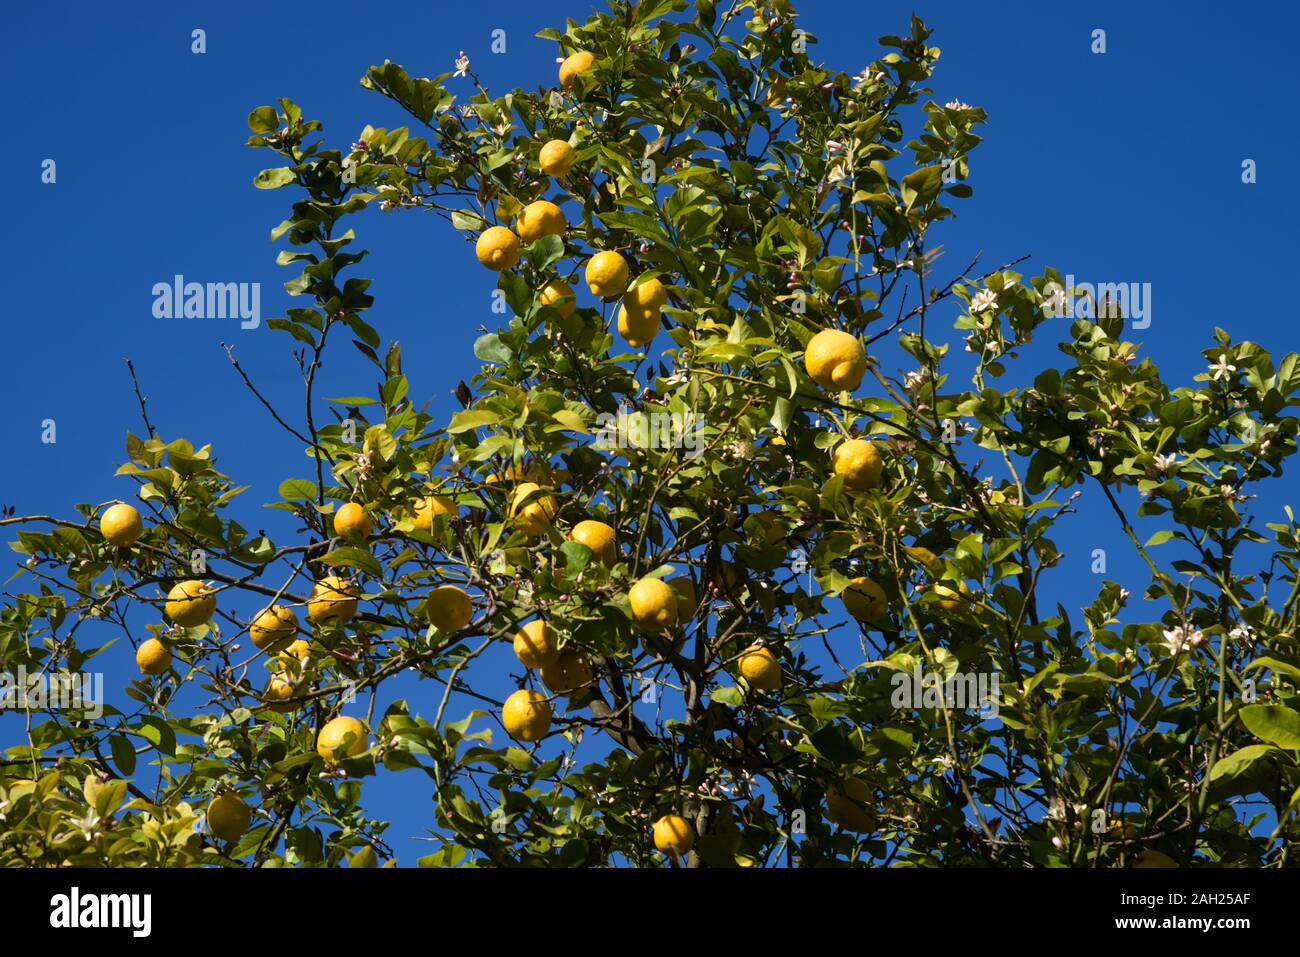 Italy  Sicily  Syracuse , 05 May 2019:  Sicilian cedars on the tree - Mediterranean citrus fruits similar to lemon Stock Photo